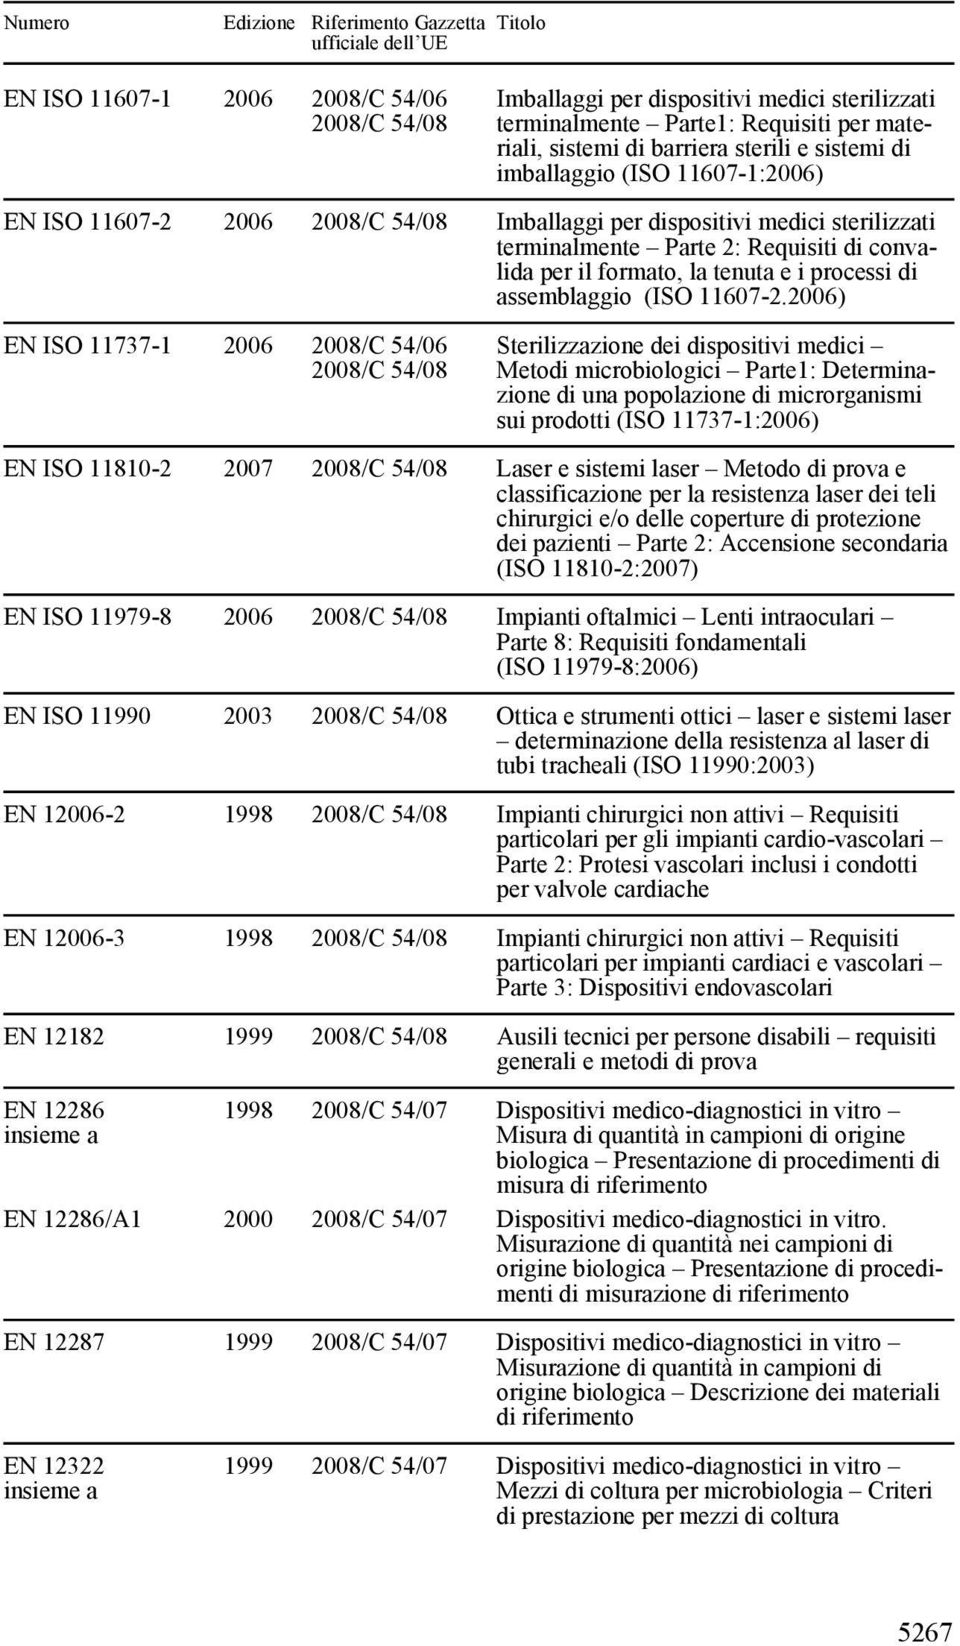 2006) EN ISO 11737-1 2006 2008/C 54/06 Sterilizzazione dei dispositivi medici Metodi microbiologici Parte1: Determinazione di una popolazione di microrganismi sui prodotti (ISO 11737-1:2006) EN ISO